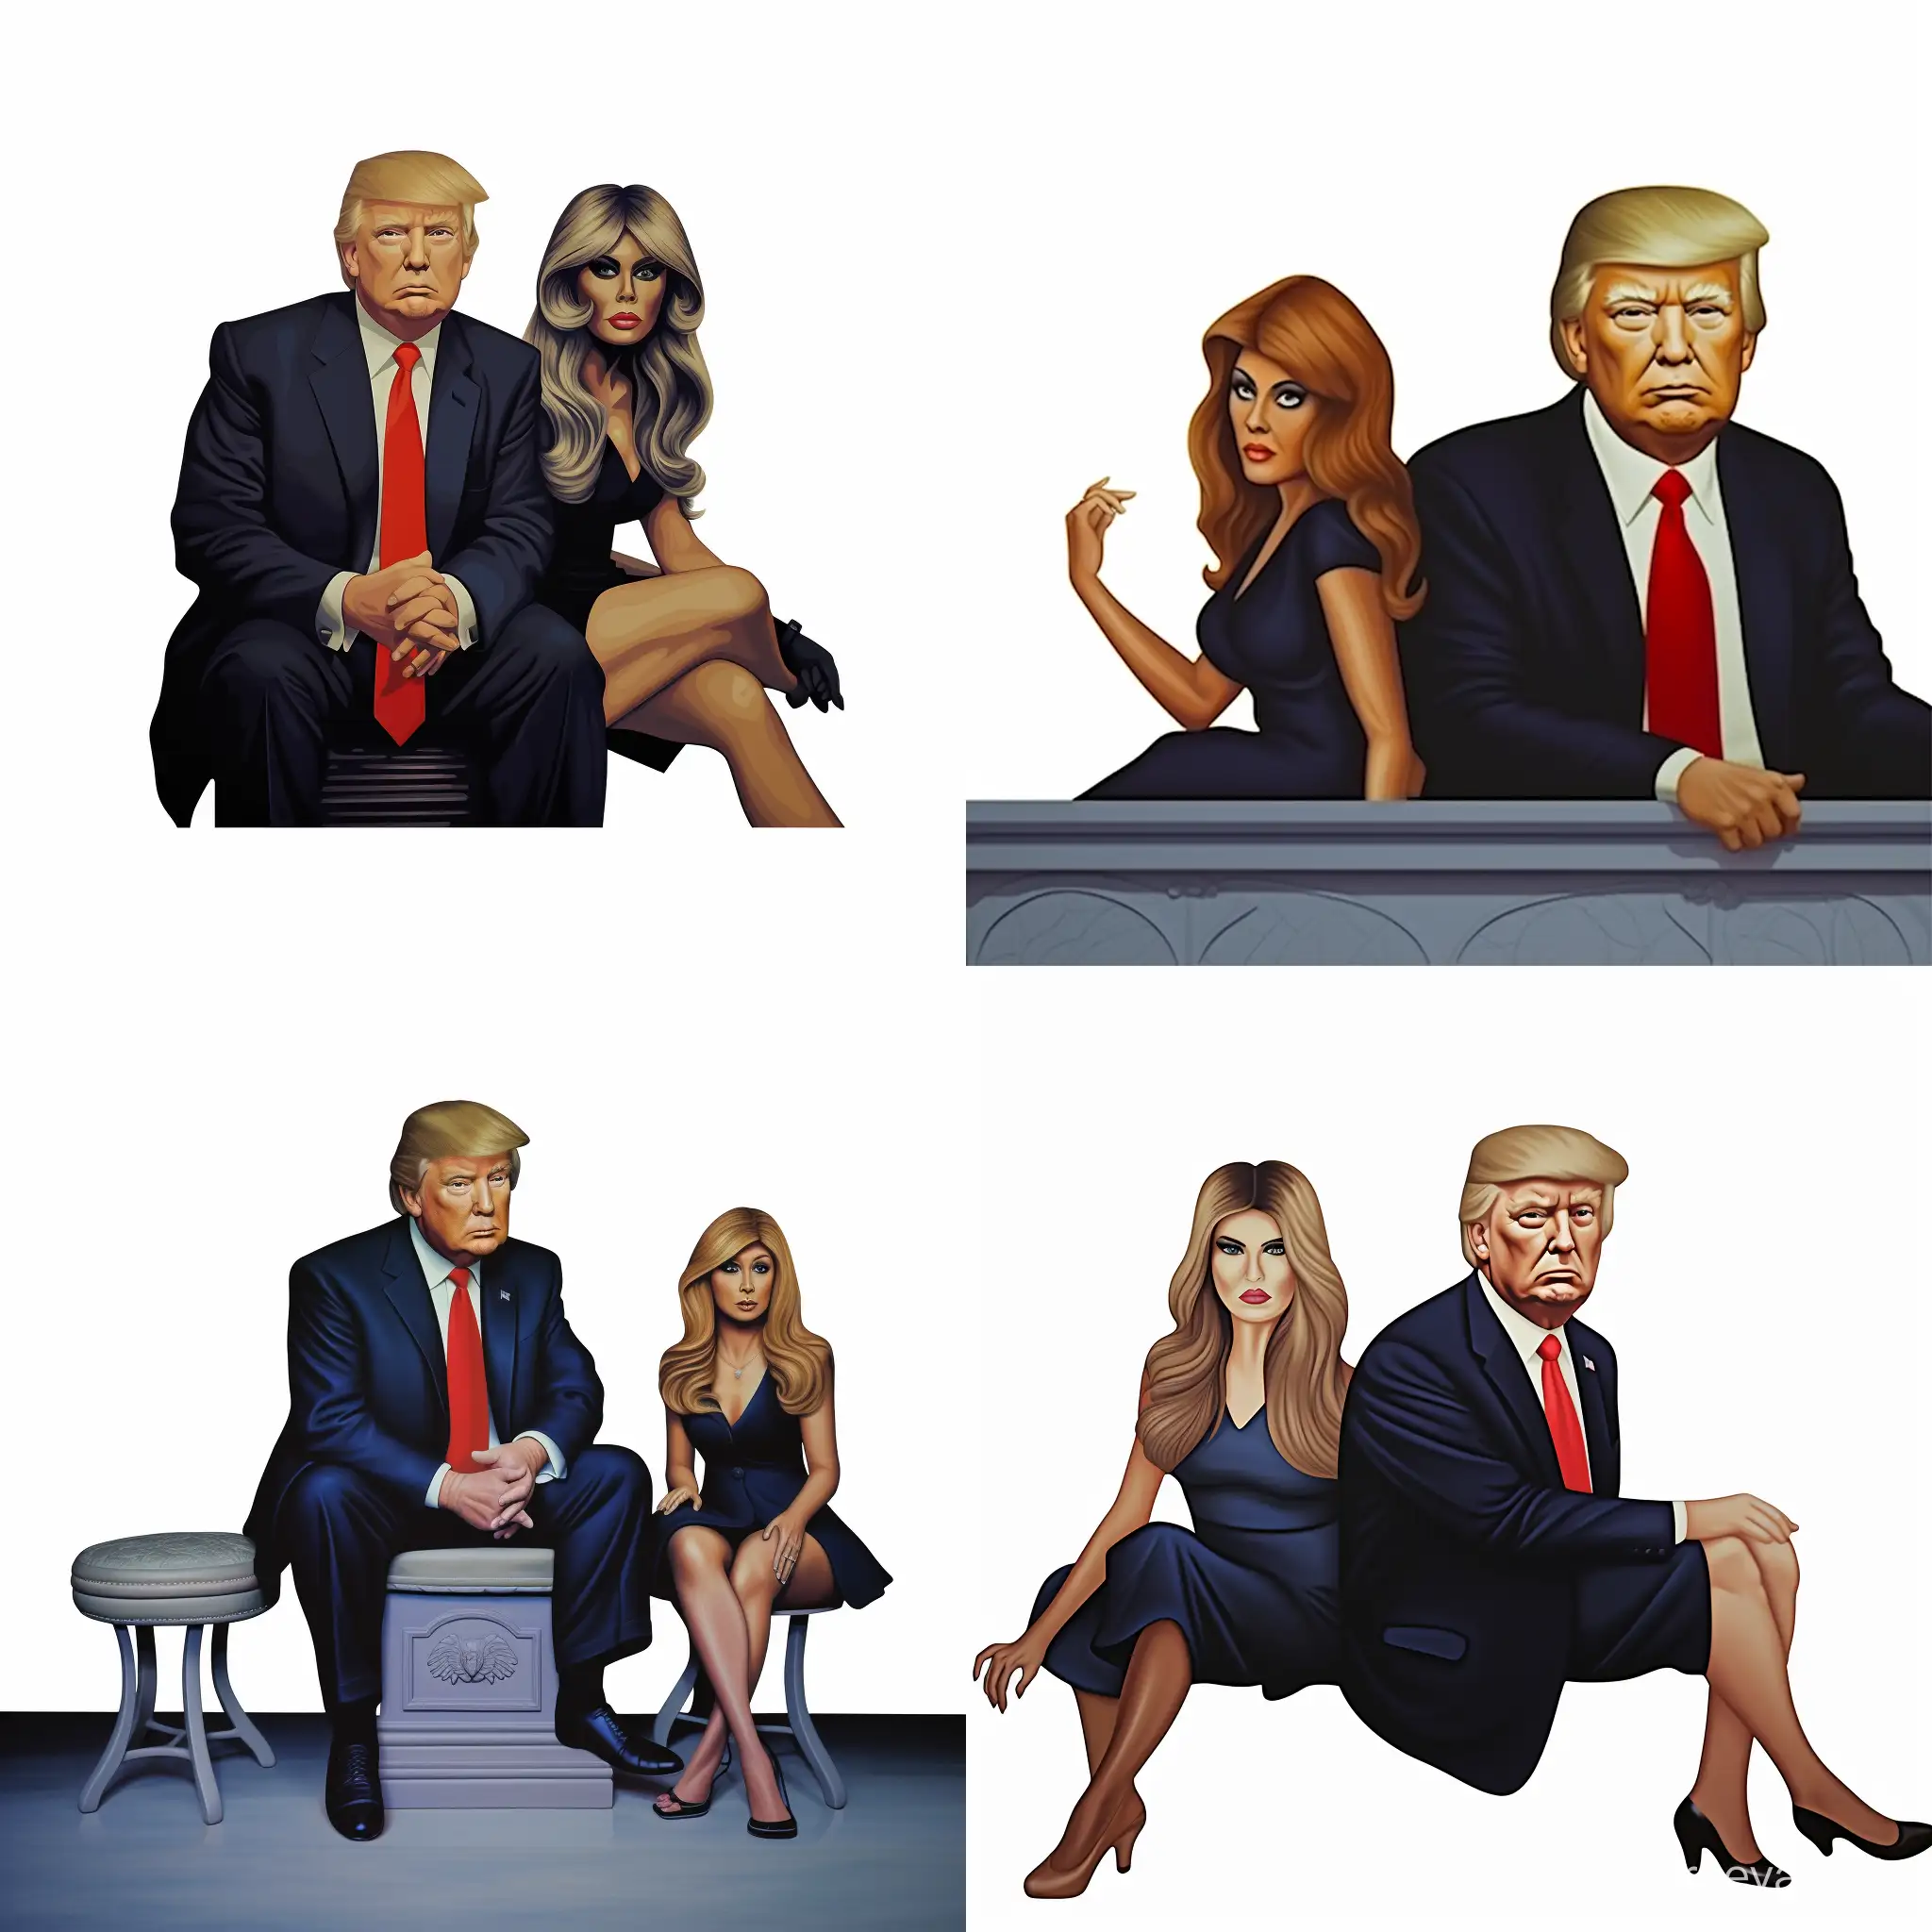 Media-Showdown-Carol-Costello-Interviews-Donald-Trump-in-Glamorous-Attire